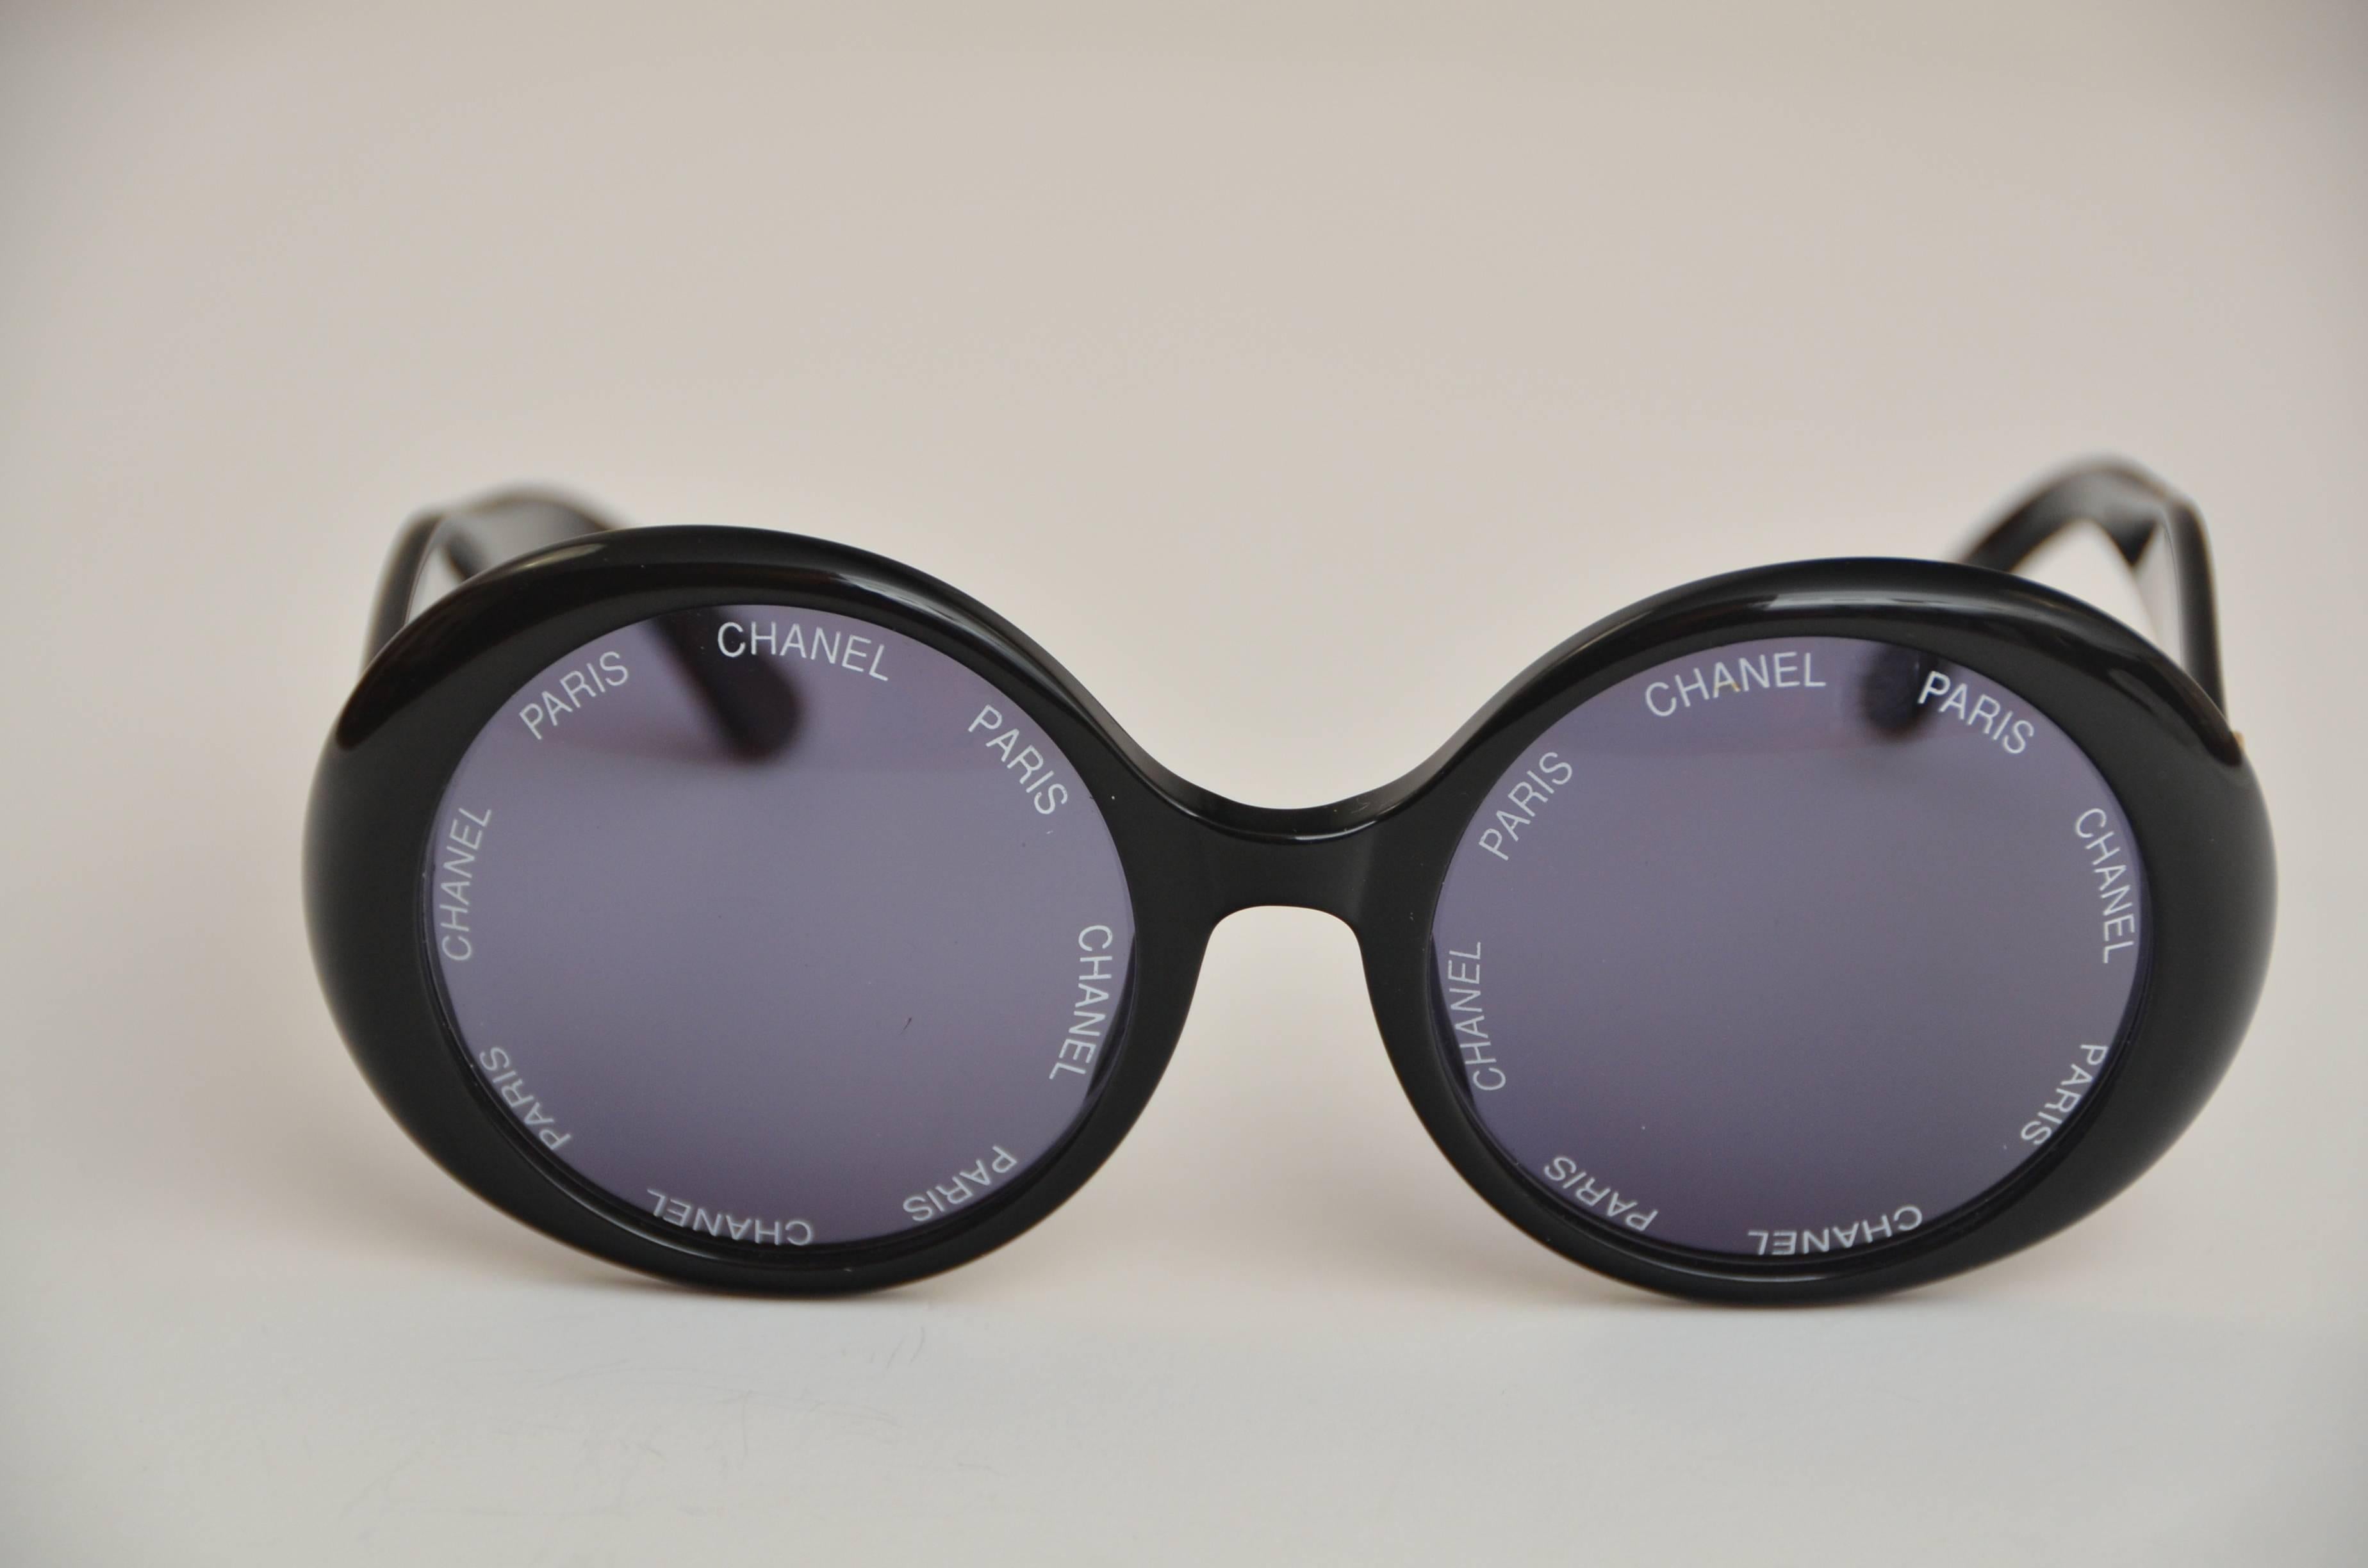 Chanel seltene Vintage-Sonnenbrille.
Neuwertiger Zustand.
Gesehen an Rihana in Weiß .Chanel Paris gedruckt auf dem  Linsen.
Sie sehen fantastisch aus auf .
Keine Kratzer oder andere auffällige Mängel, einschließlich der Originalverpackung.

FINAL